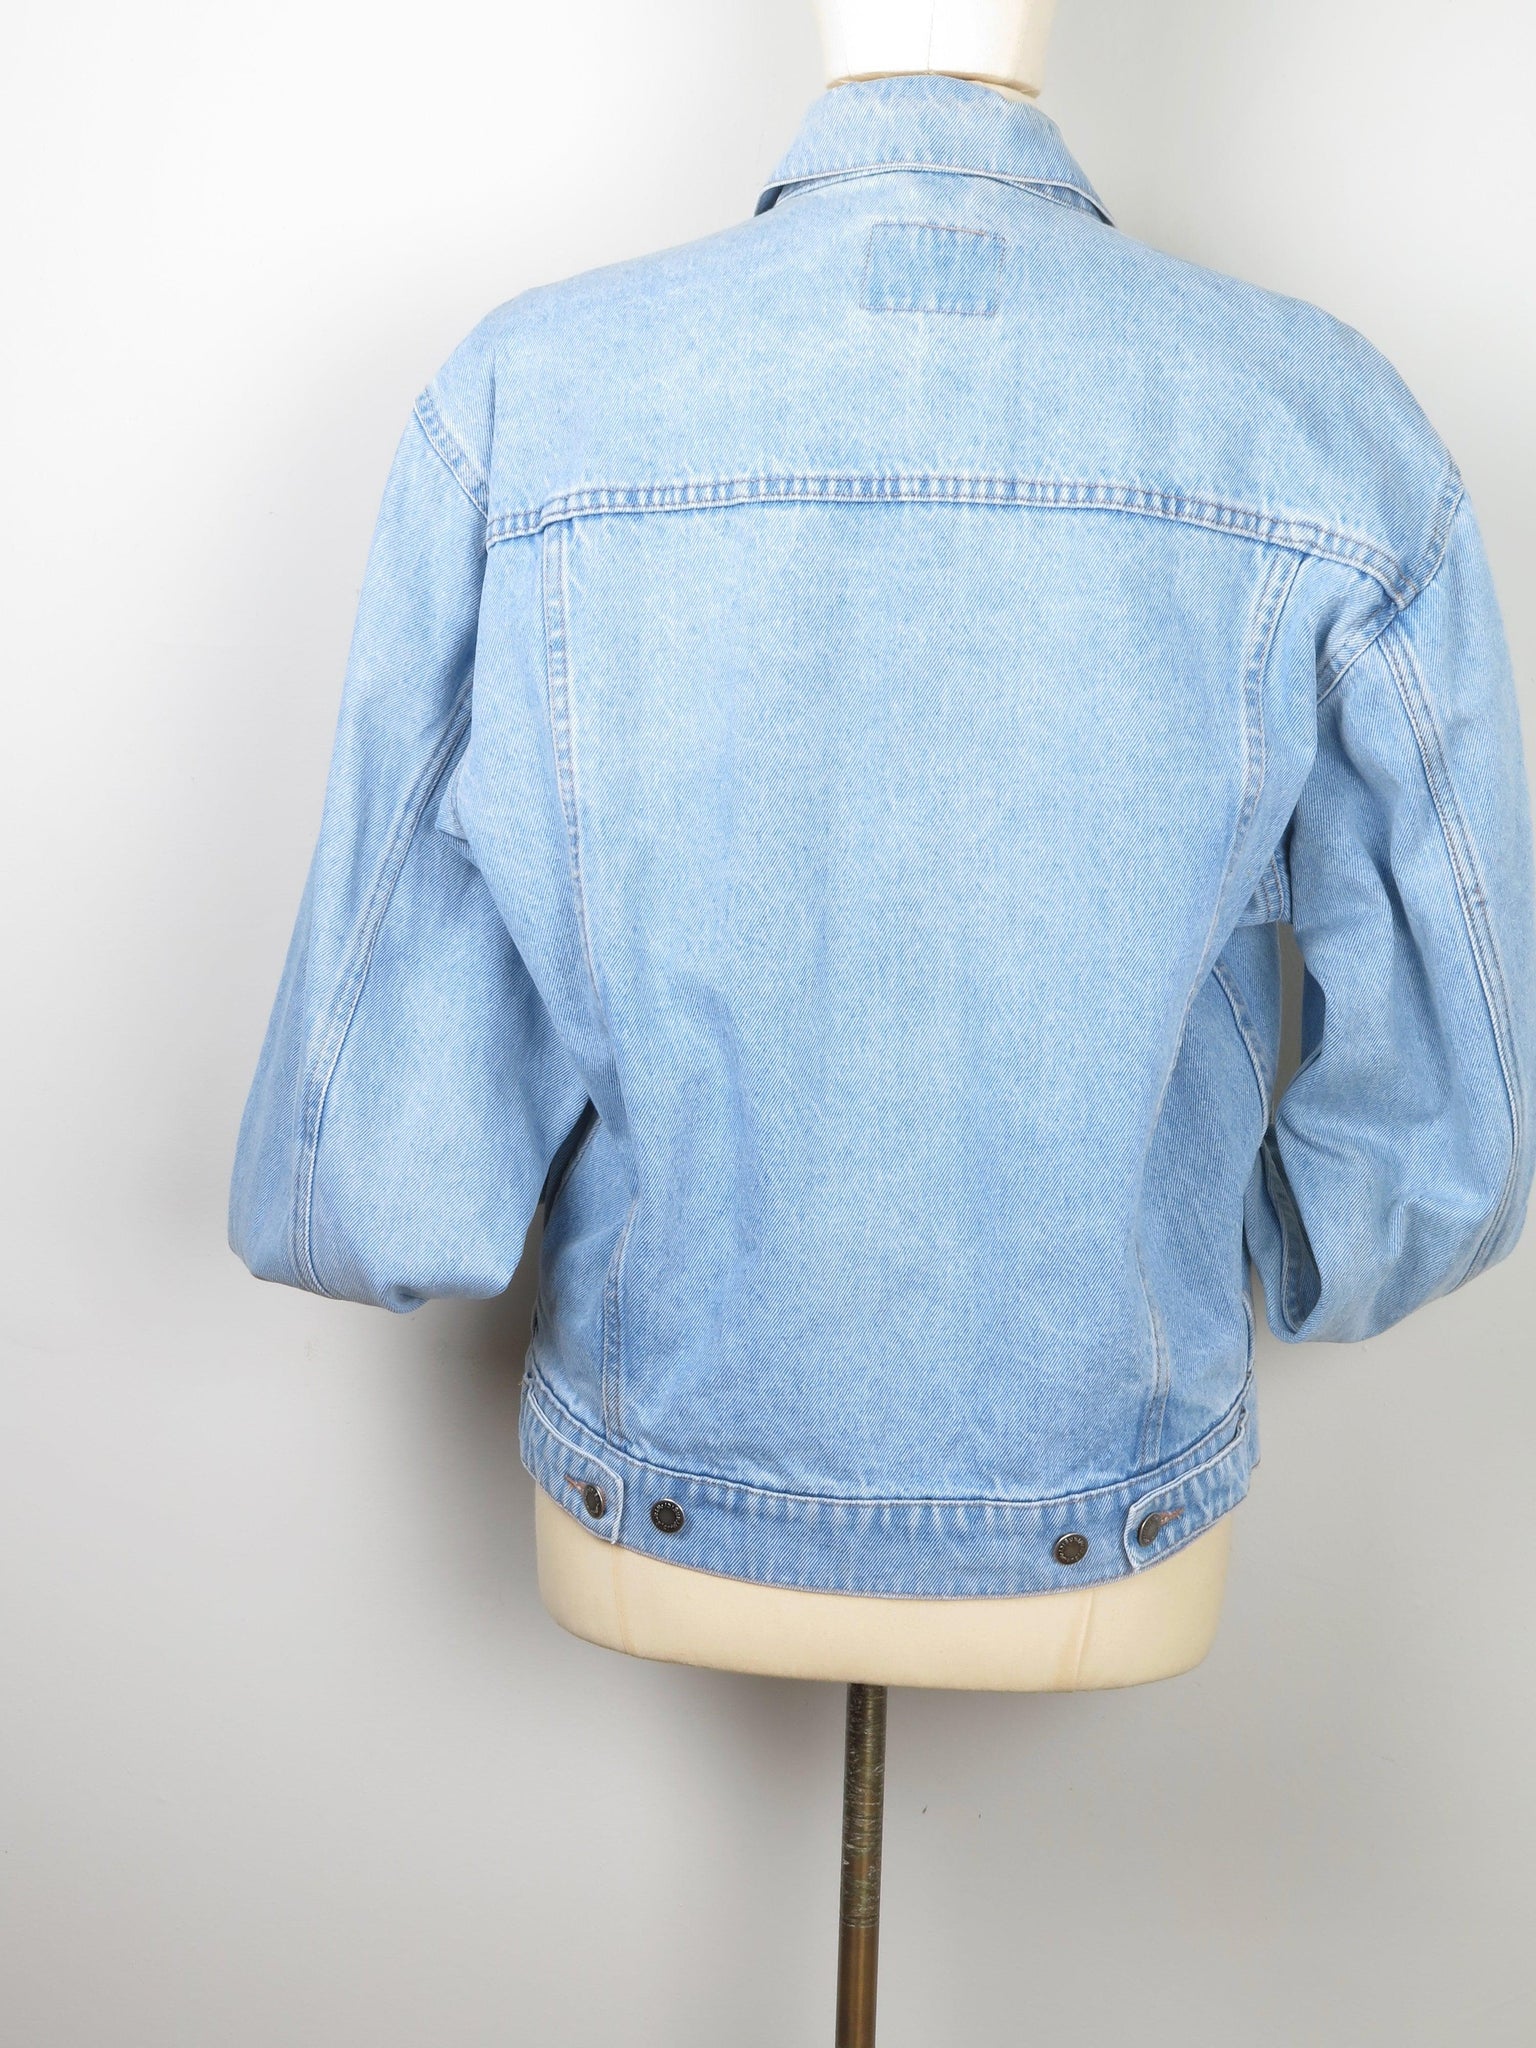 Vintage Wrangler Blue Denim Jacket S/M - The Harlequin